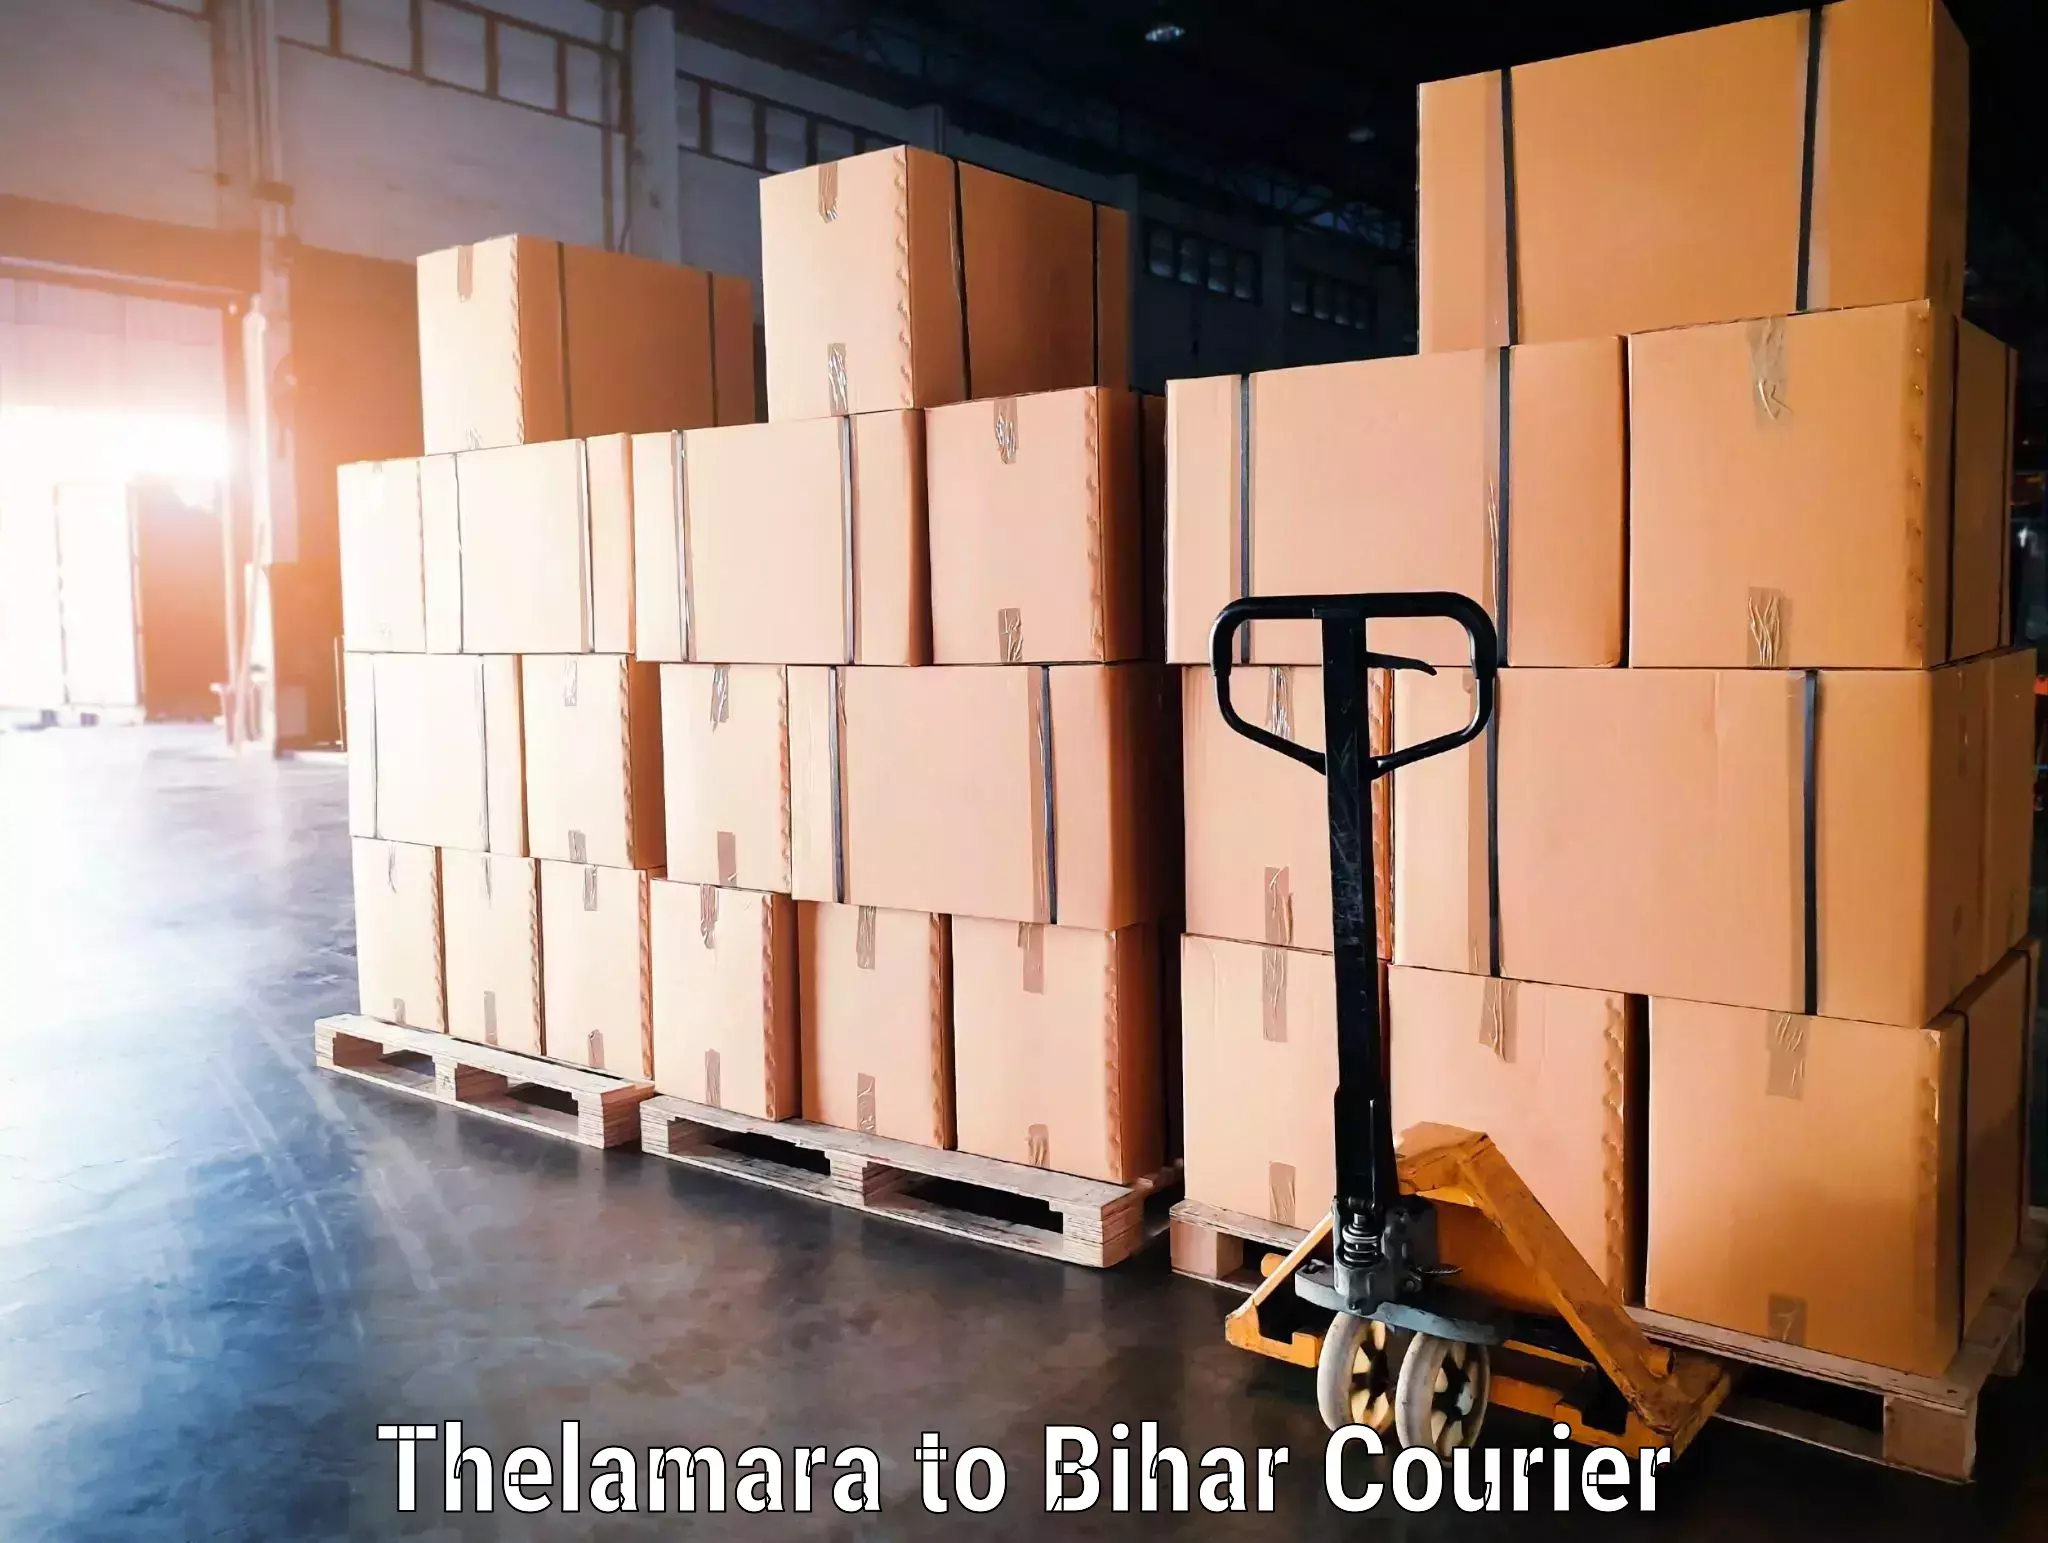 Door to door luggage delivery in Thelamara to Motipur